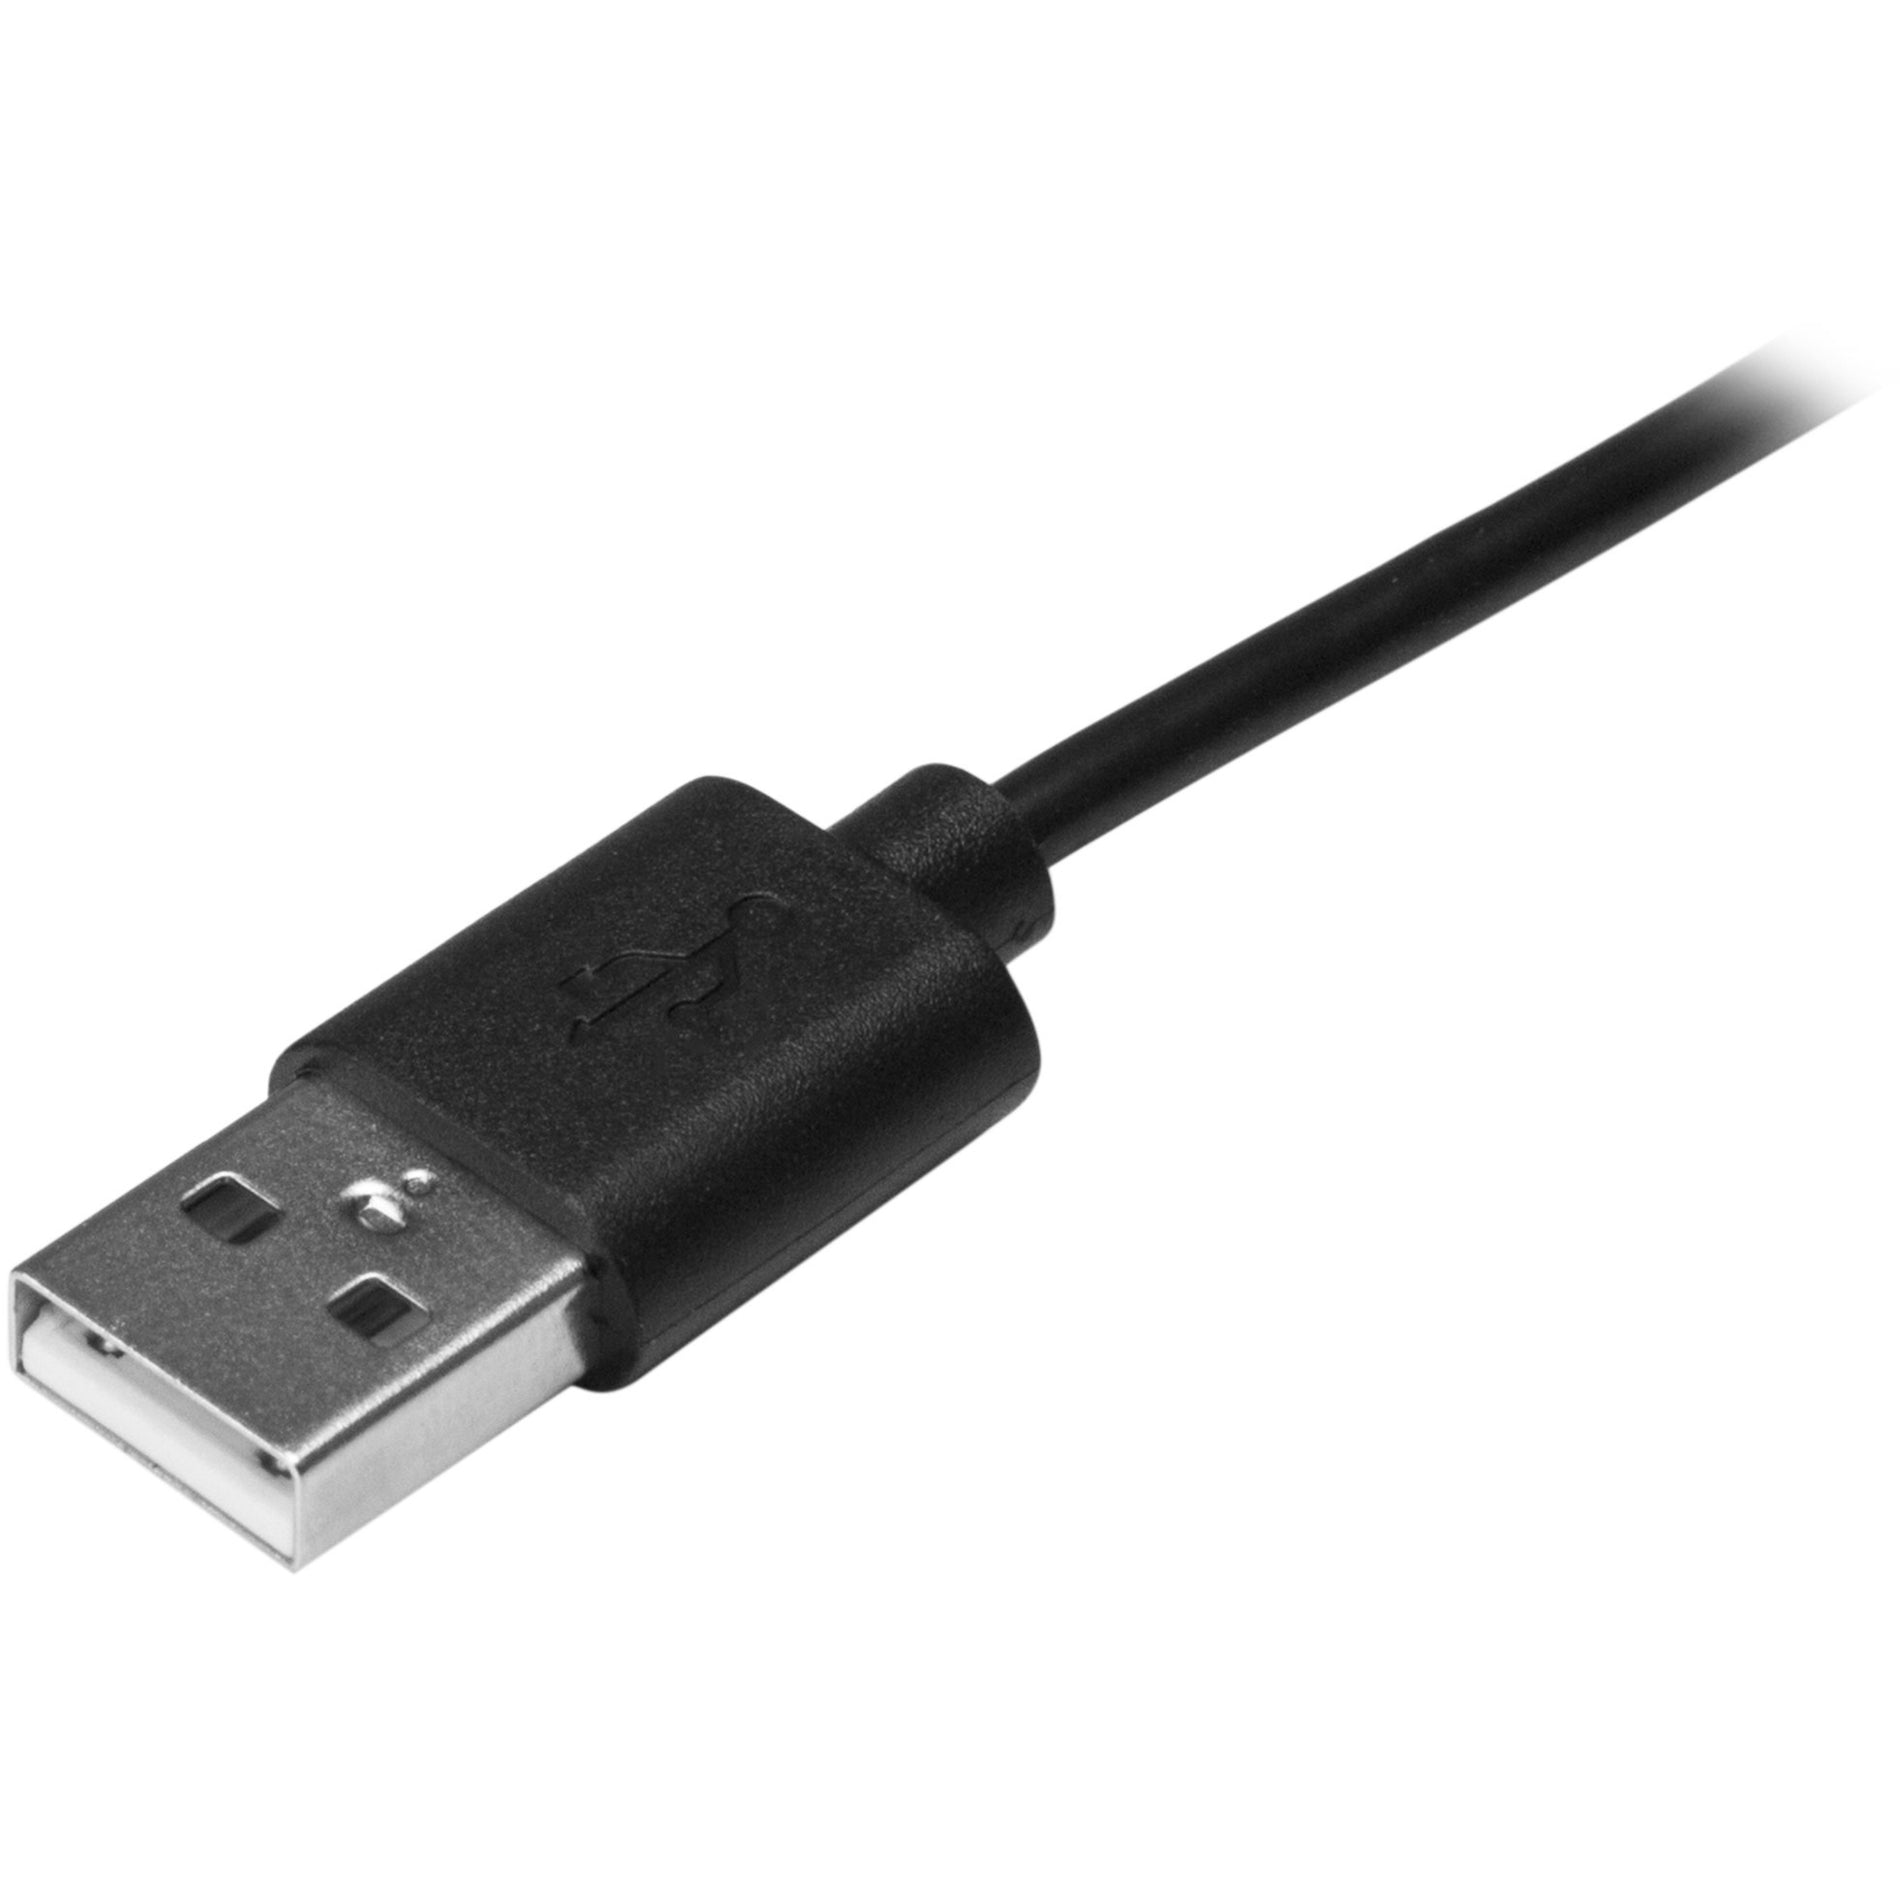 كبل StarTech.com USB2AC1M 1 متر (3 أقدام) USB-C إلى USB-A ، كبل USB Type-C إلى USB Type-A